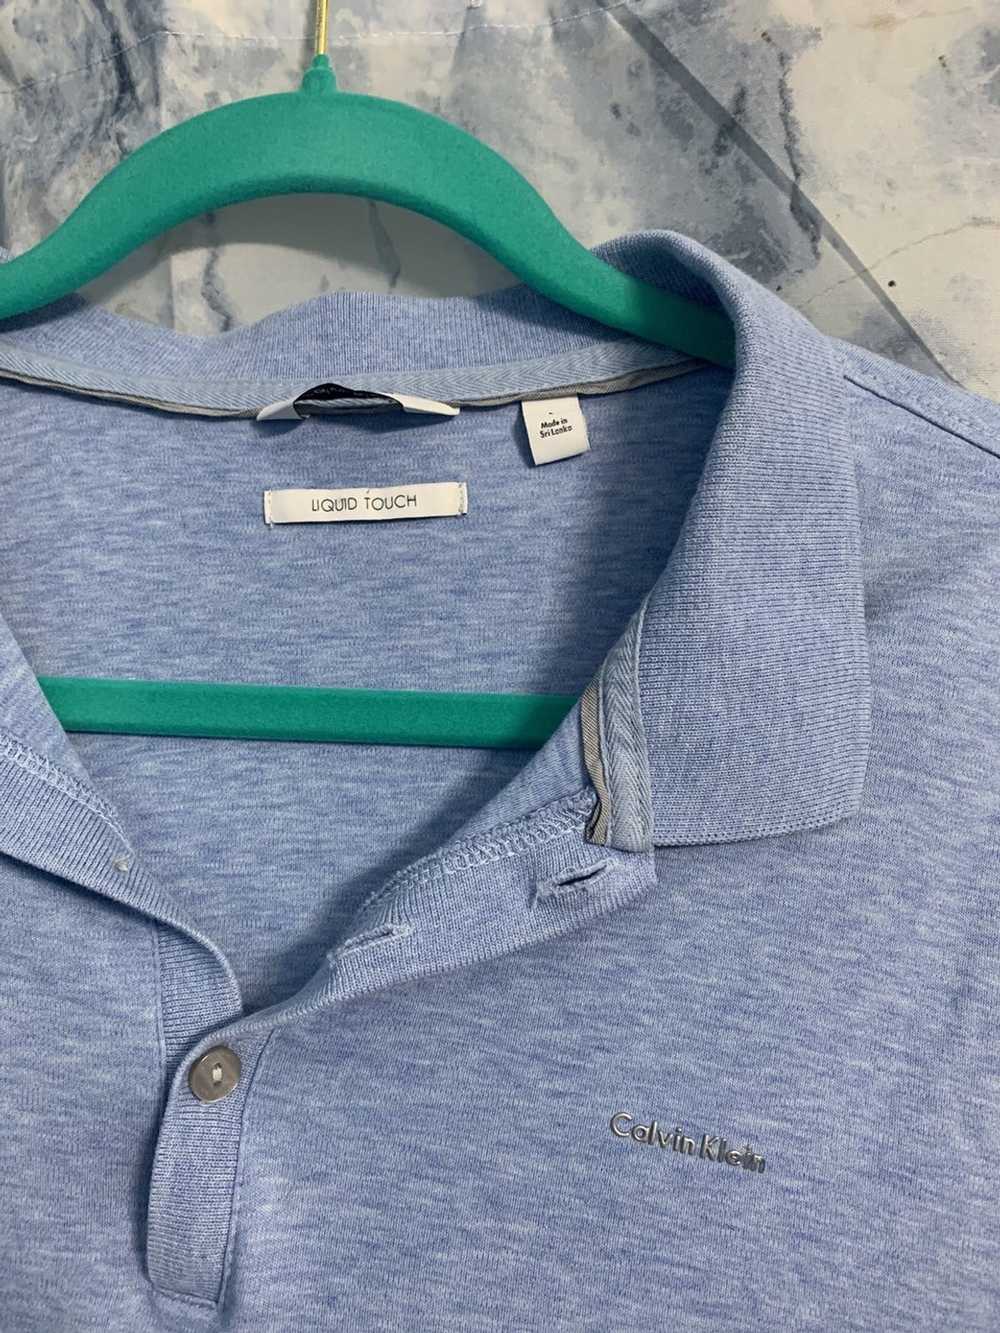 Calvin Klein Polo shirts - image 3